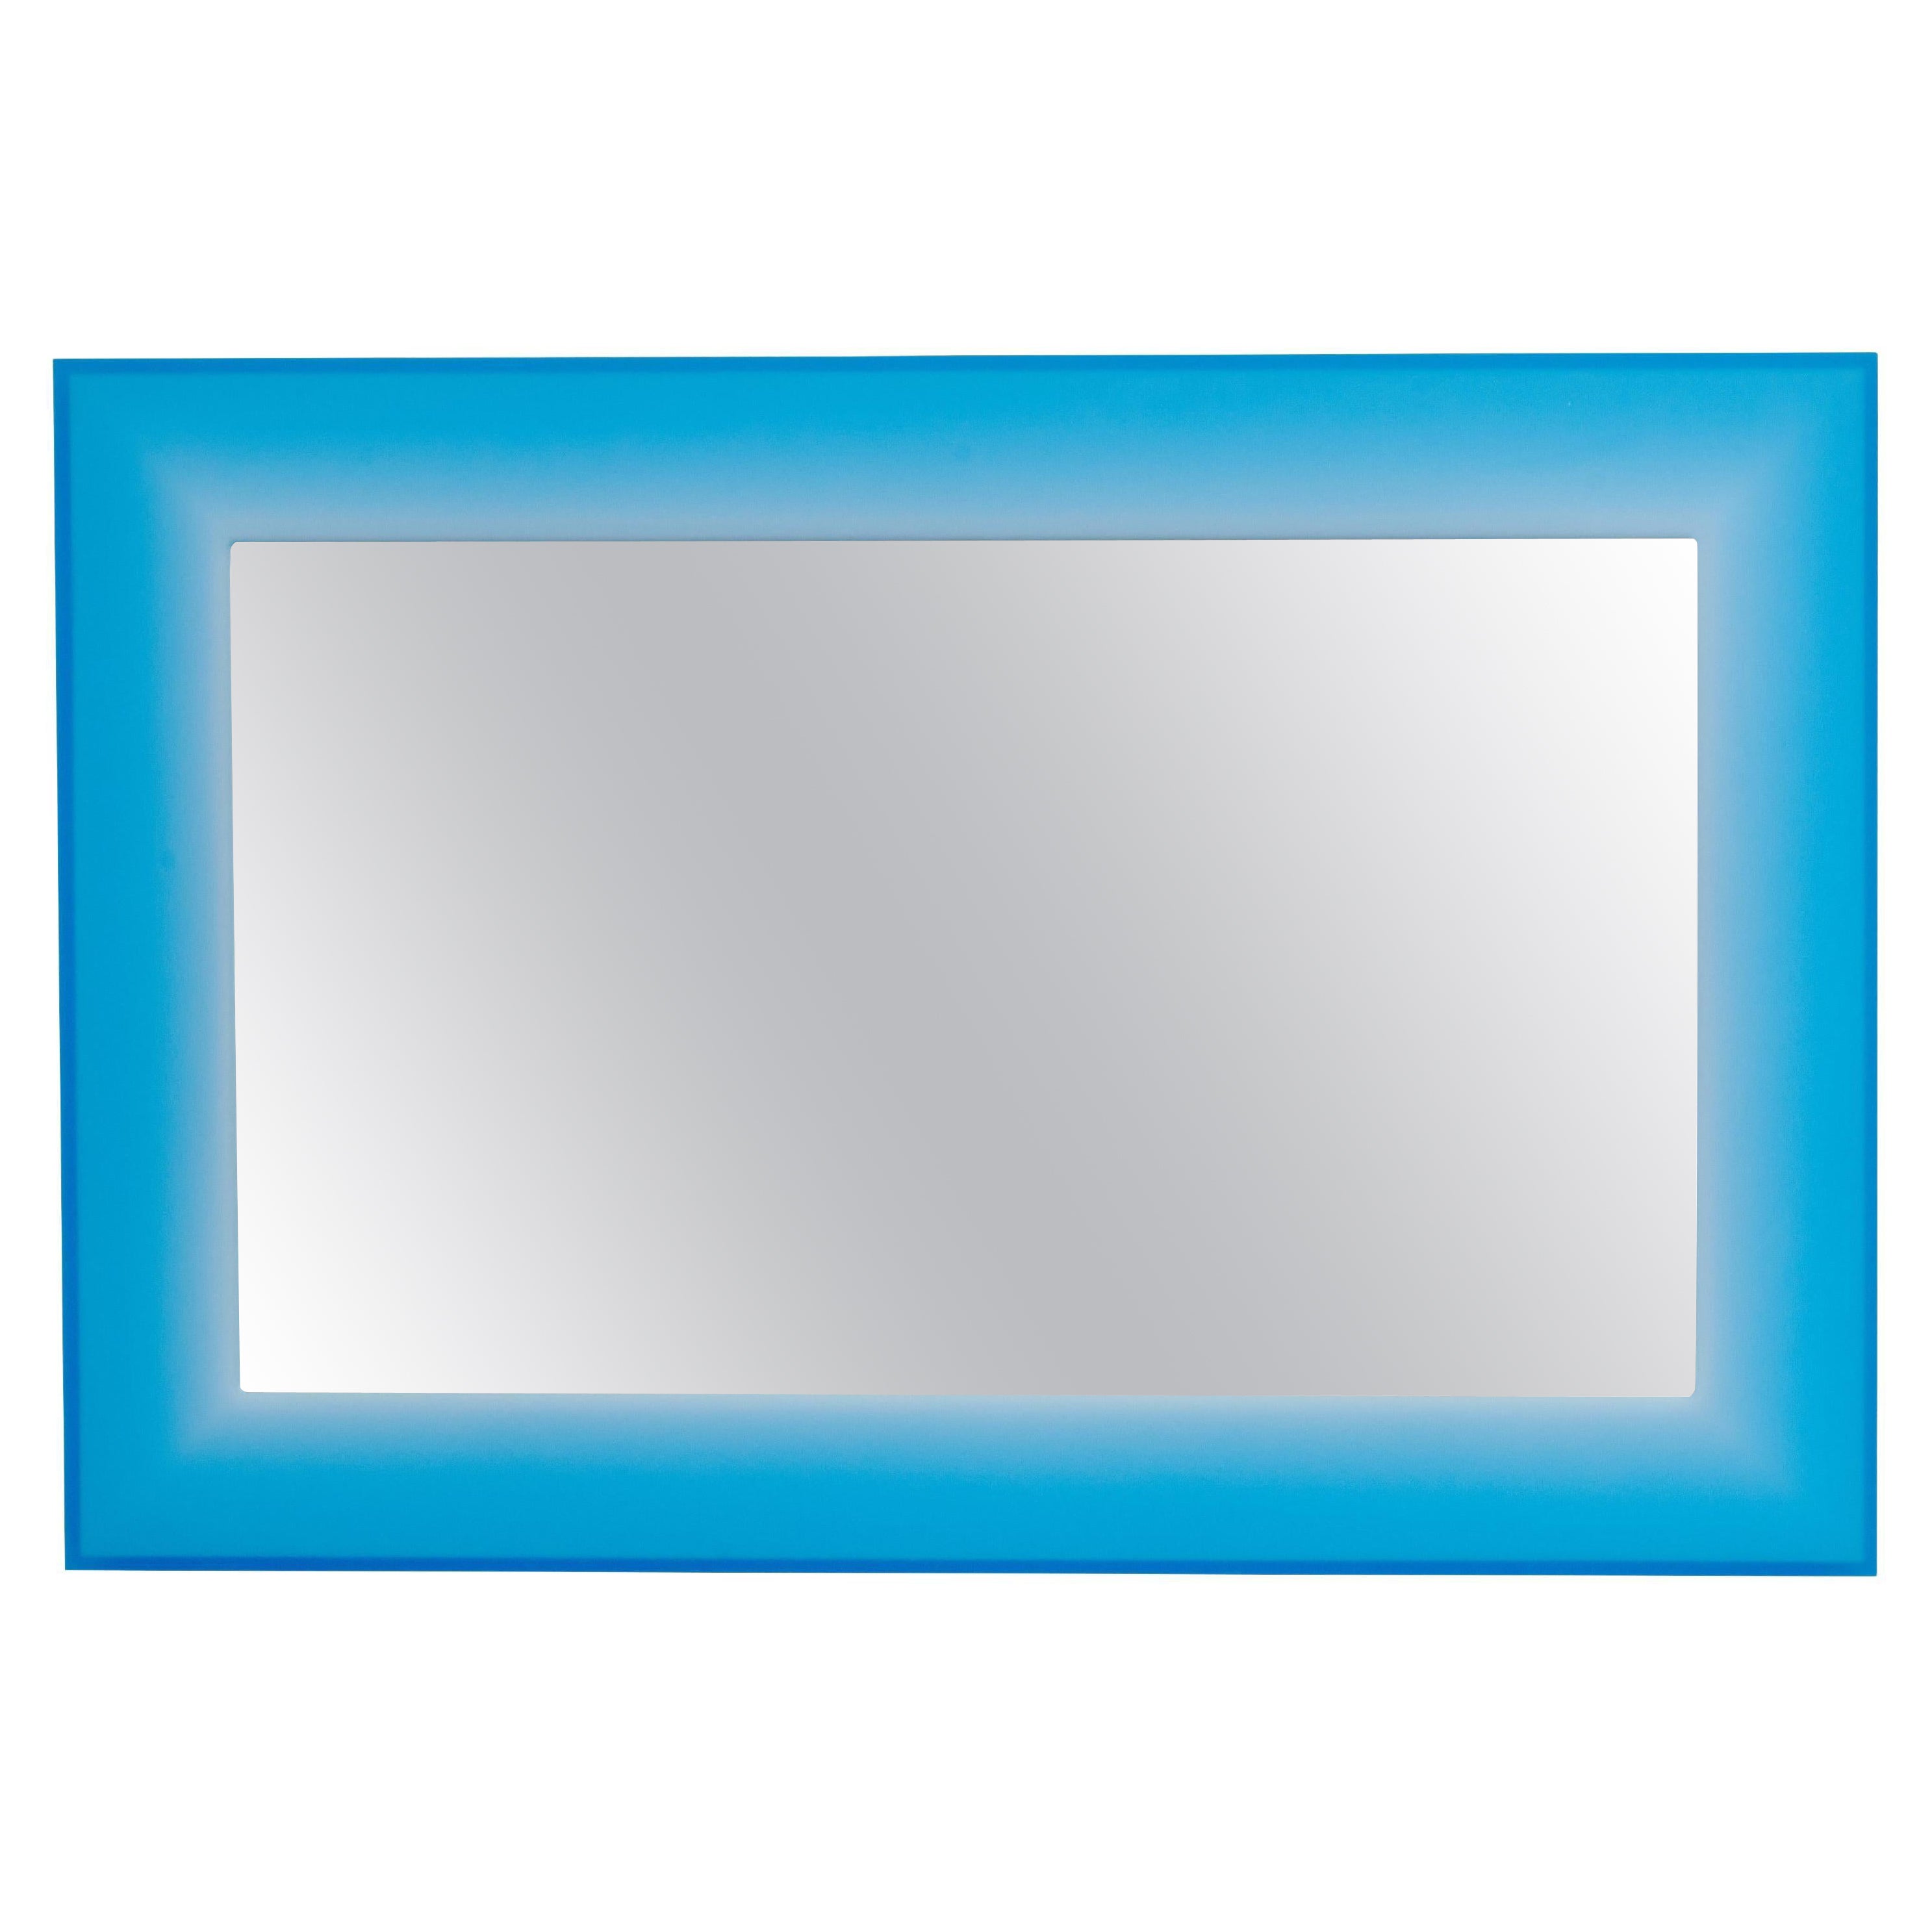 Miroir rectangulaire en résine bleue par Facture, représenté par Tuleste Factory